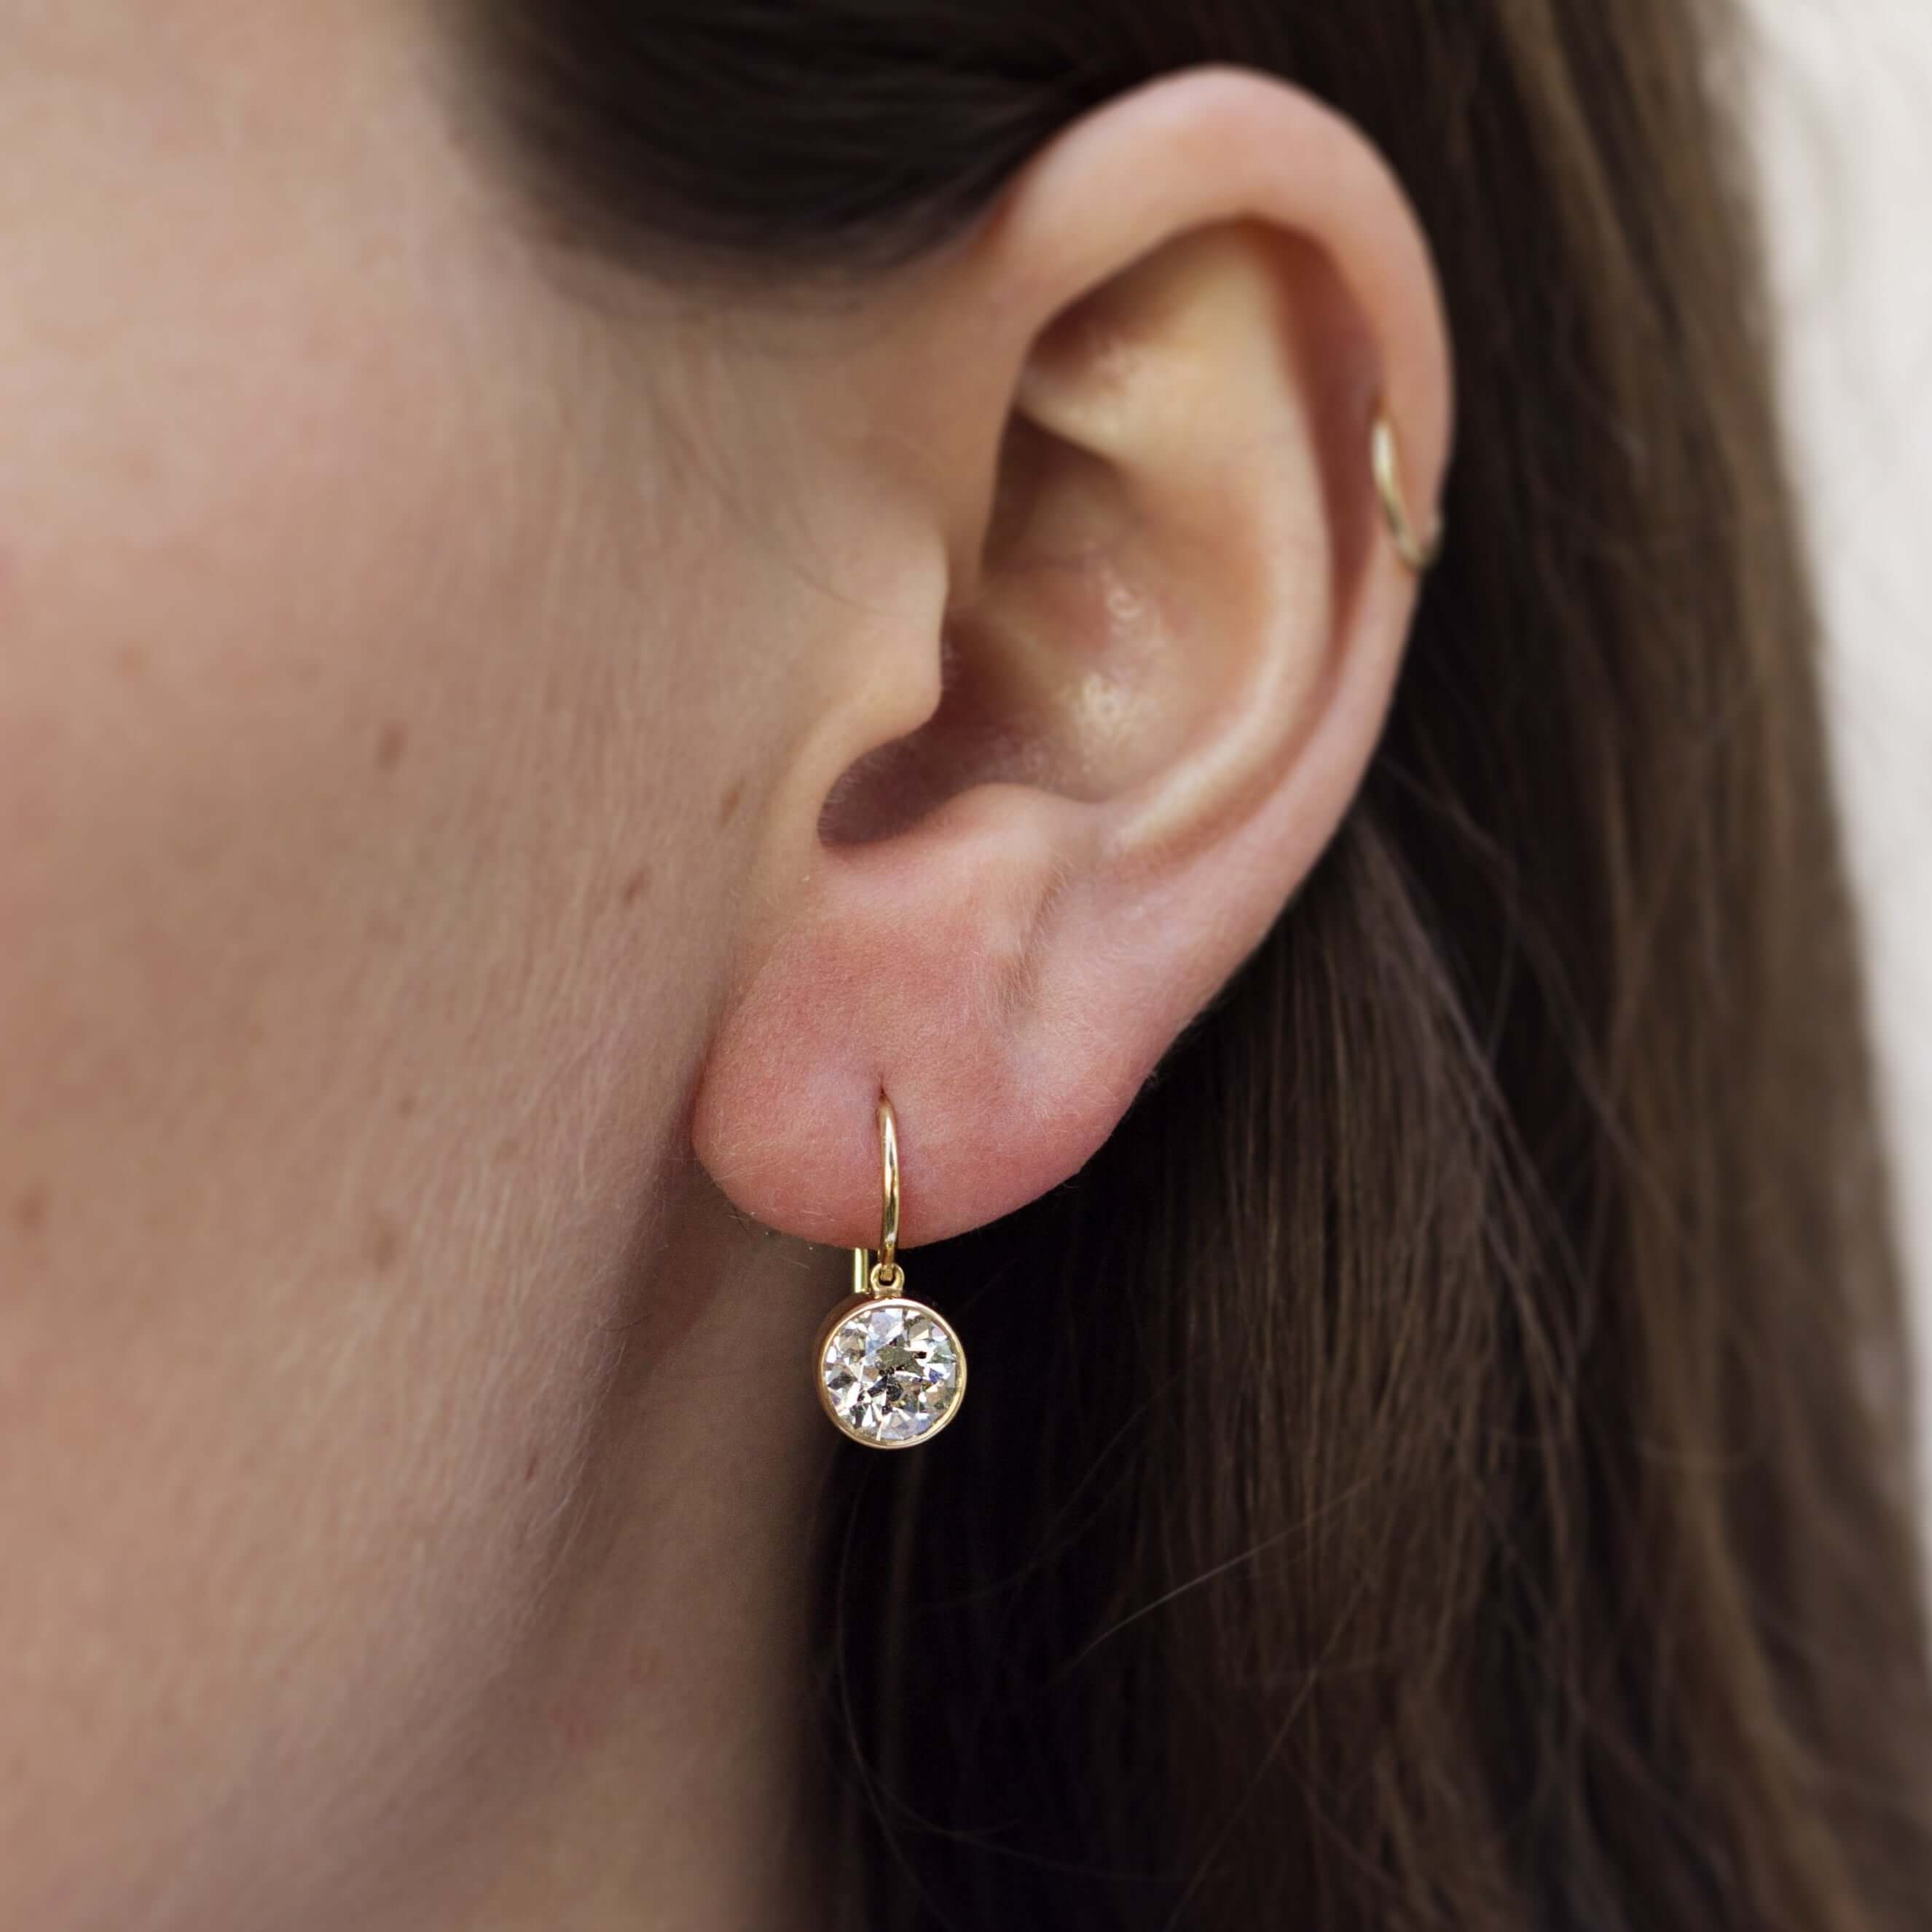 SINGLE STONE LUCIA DROPS | Earrings featuring 2.49ctwK/VSI-VS2 GIA certified oldEuropean cut diamonds bezel set in handcrafted 18K yellow gold drop earrings.